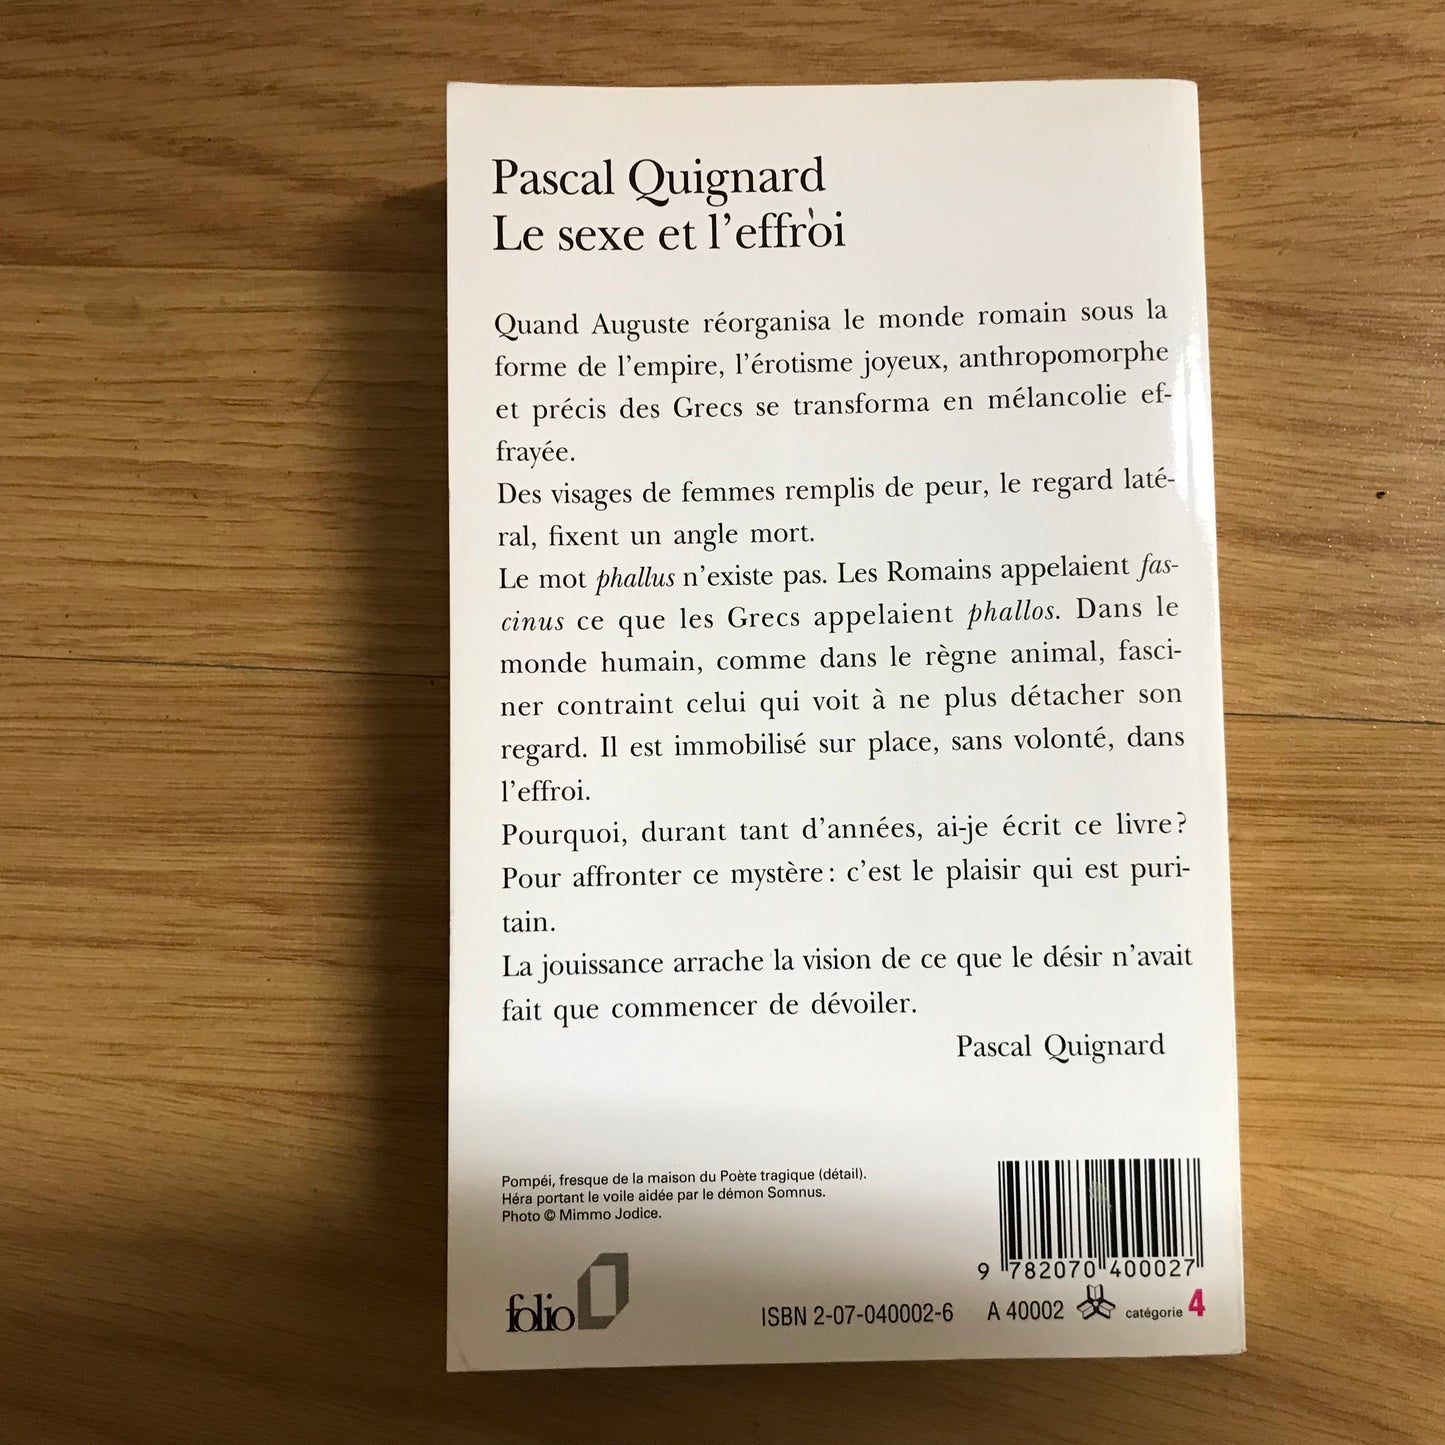 Quignard, Pascal - Le sexe et l’effroi